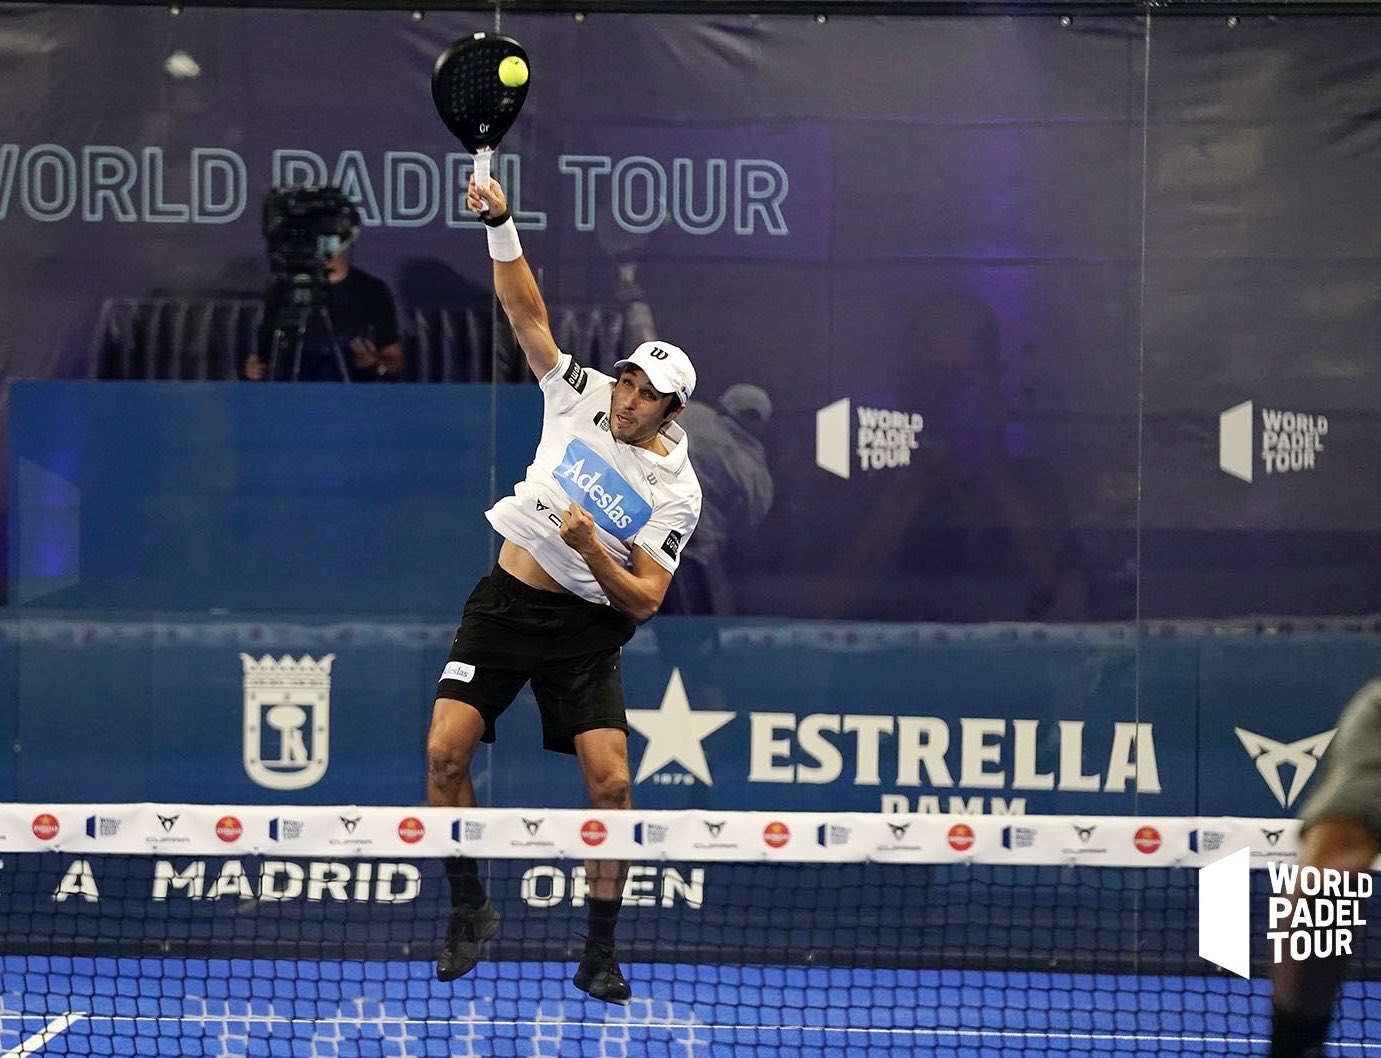 Fernando Belastegun cuartos Vuelve a Madrid Open